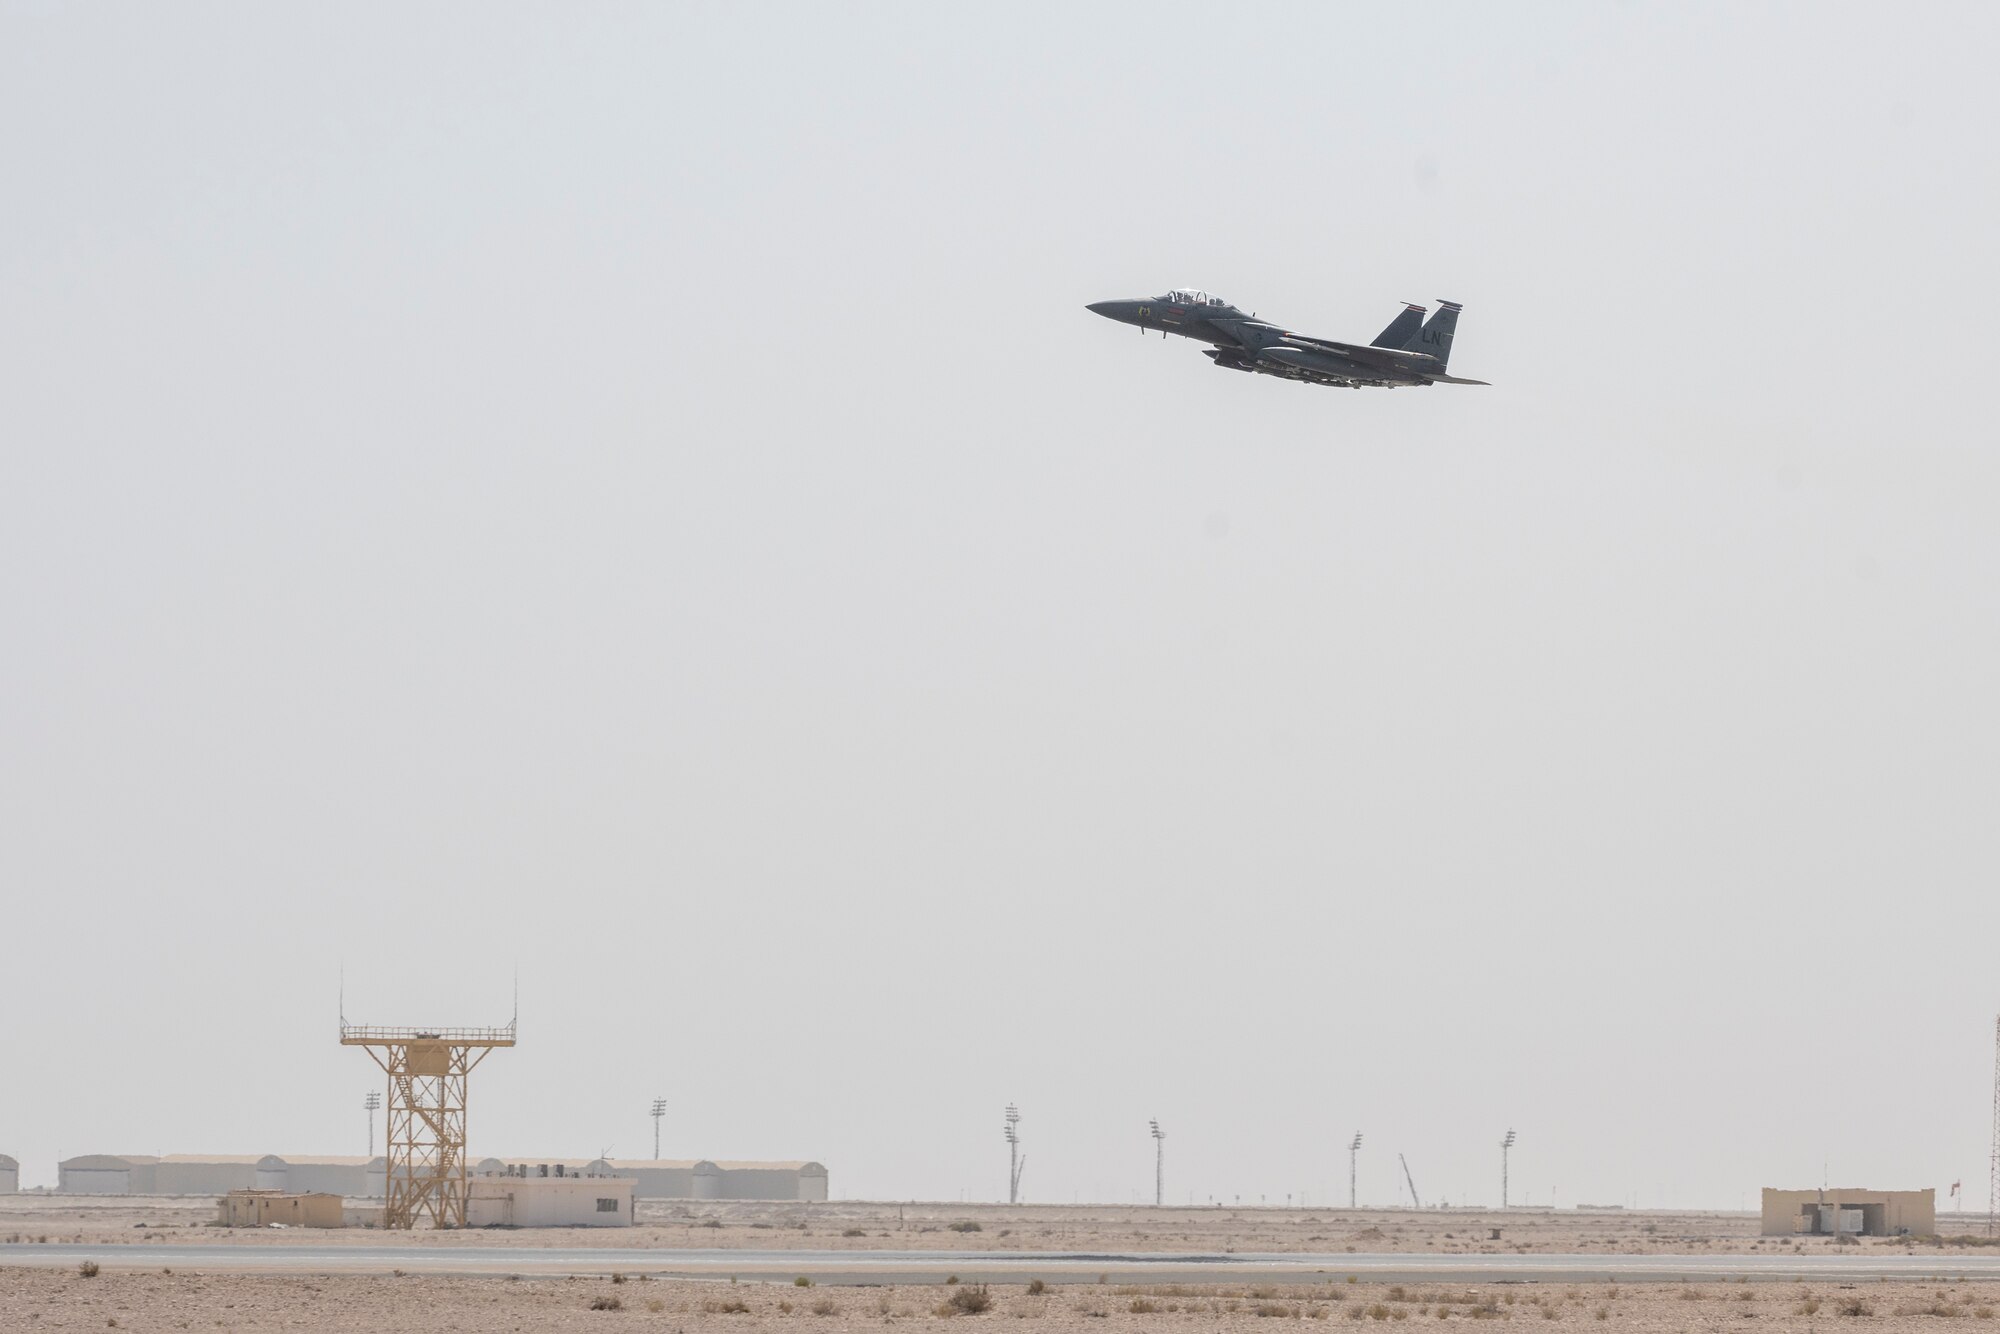 F-15 jet in flight over runway